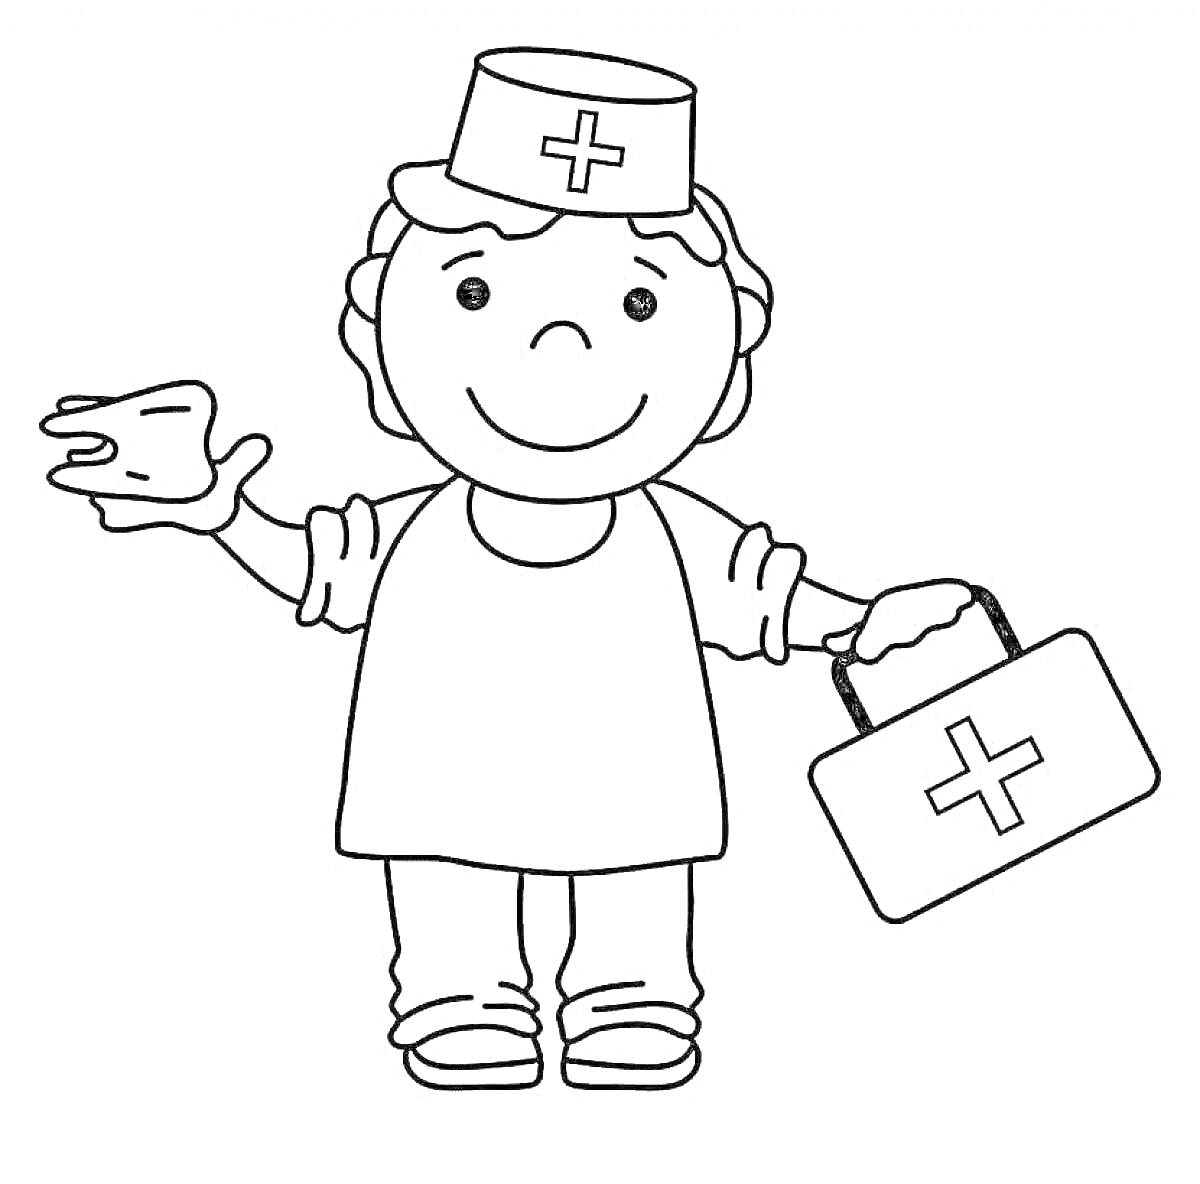 Раскраска Растянувший руку доктор с медицинской сумкой и шапочкой с крестом